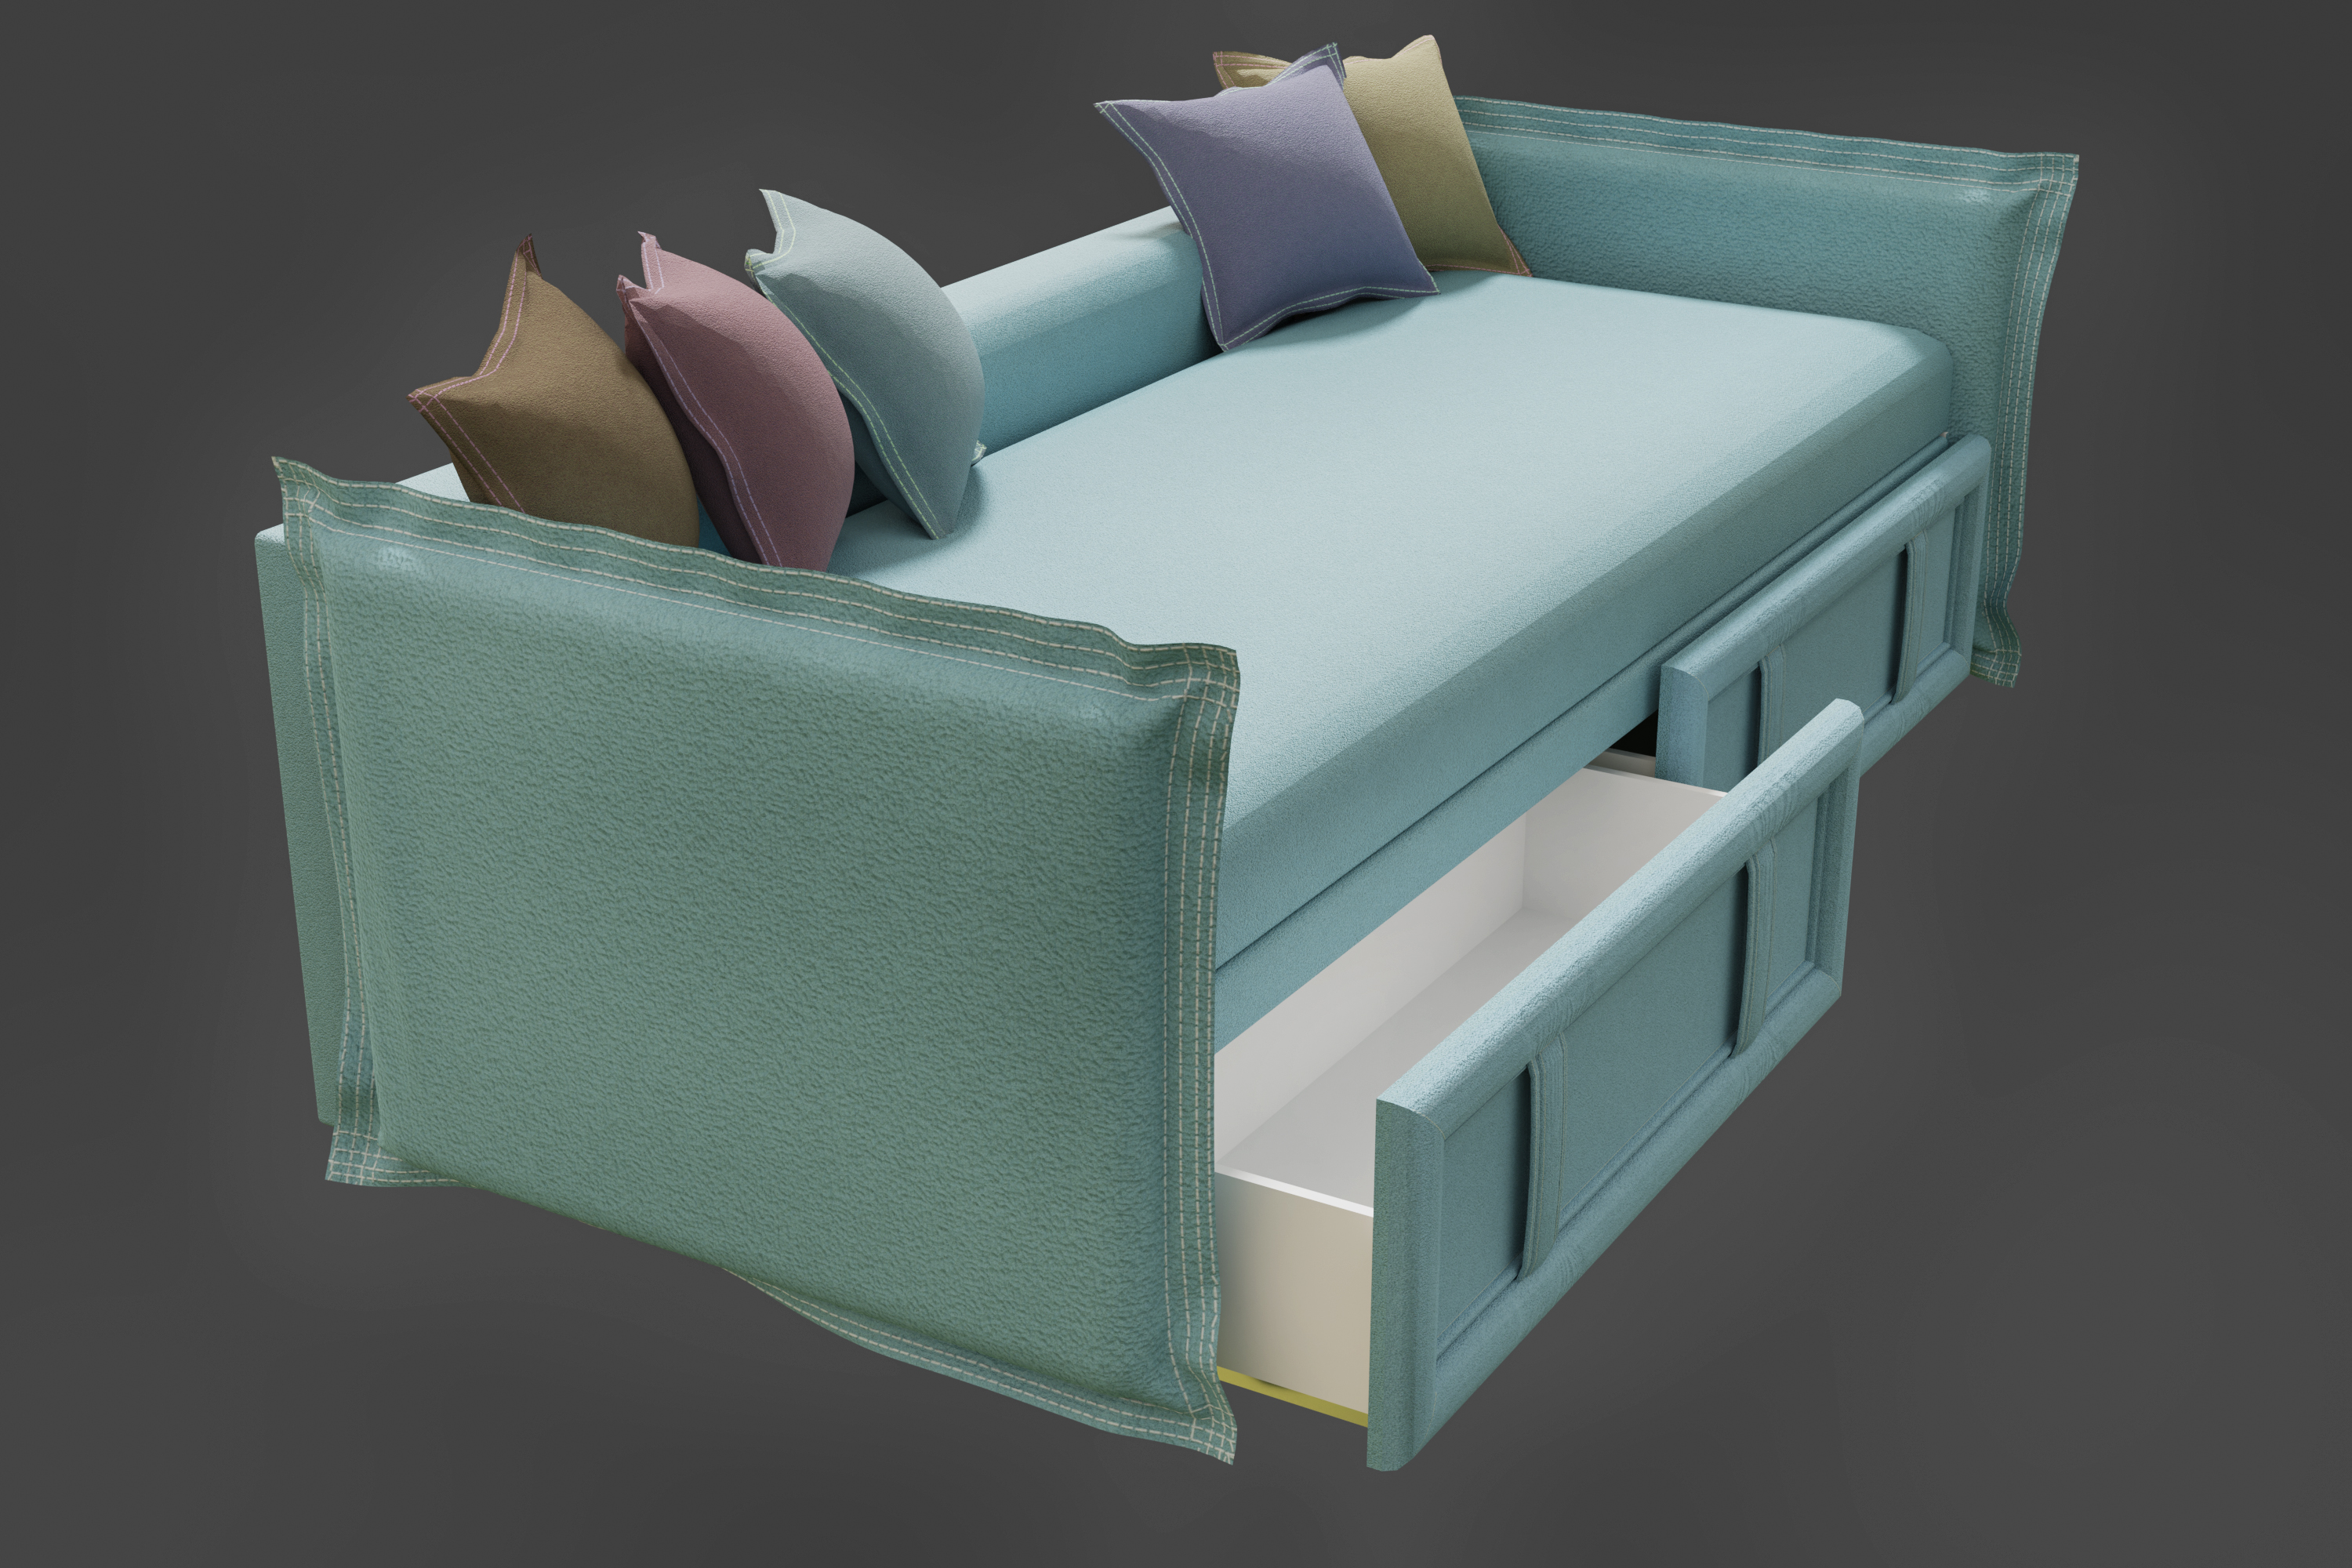 Sofa in Blender cycles render image